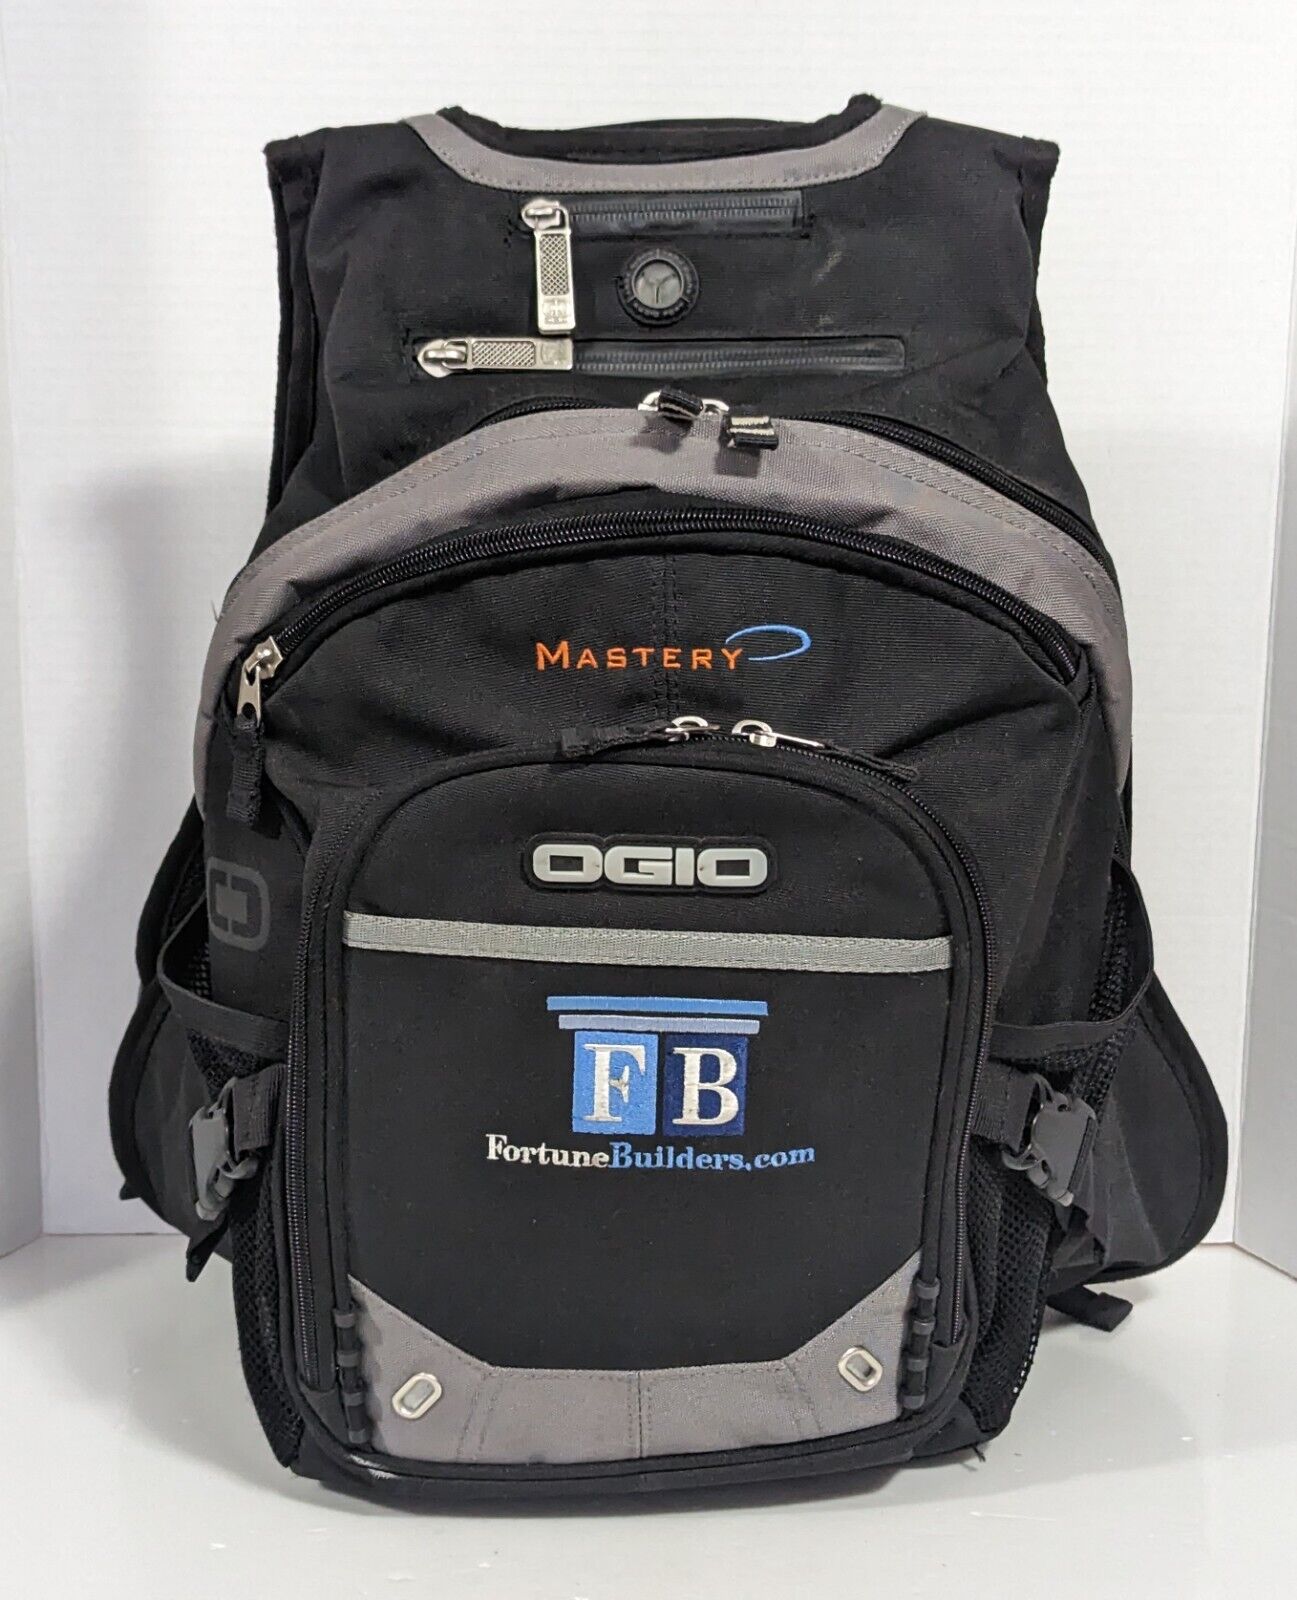 OGIO Fugitive Laptop Backpack Adult Embroidered Street Bag Black Grey